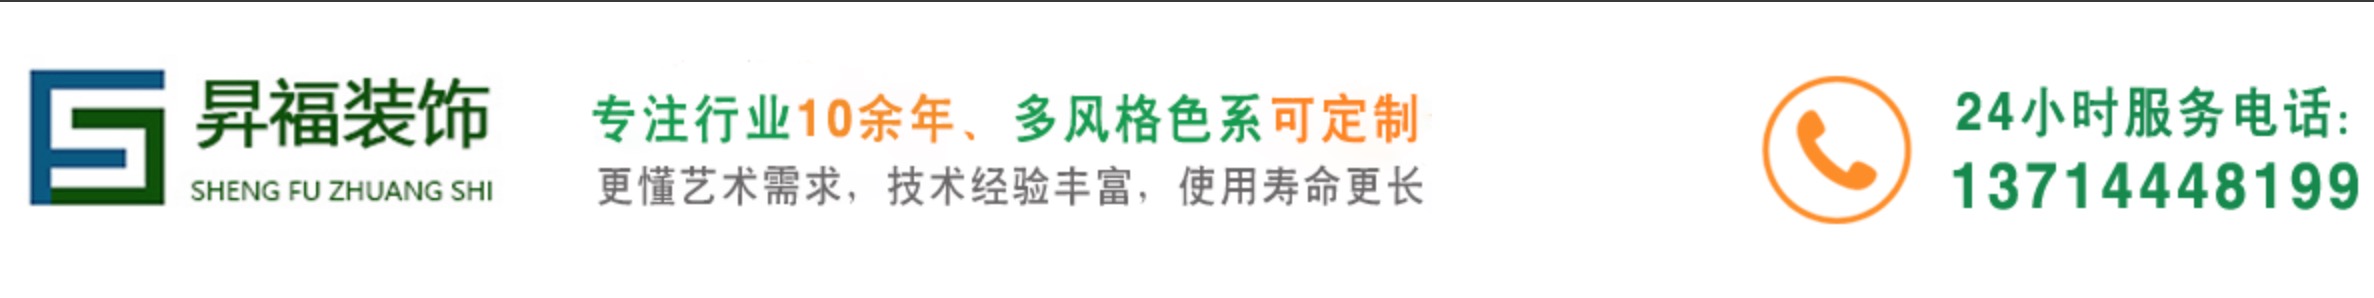 重庆上海昇福装饰施工工程公司